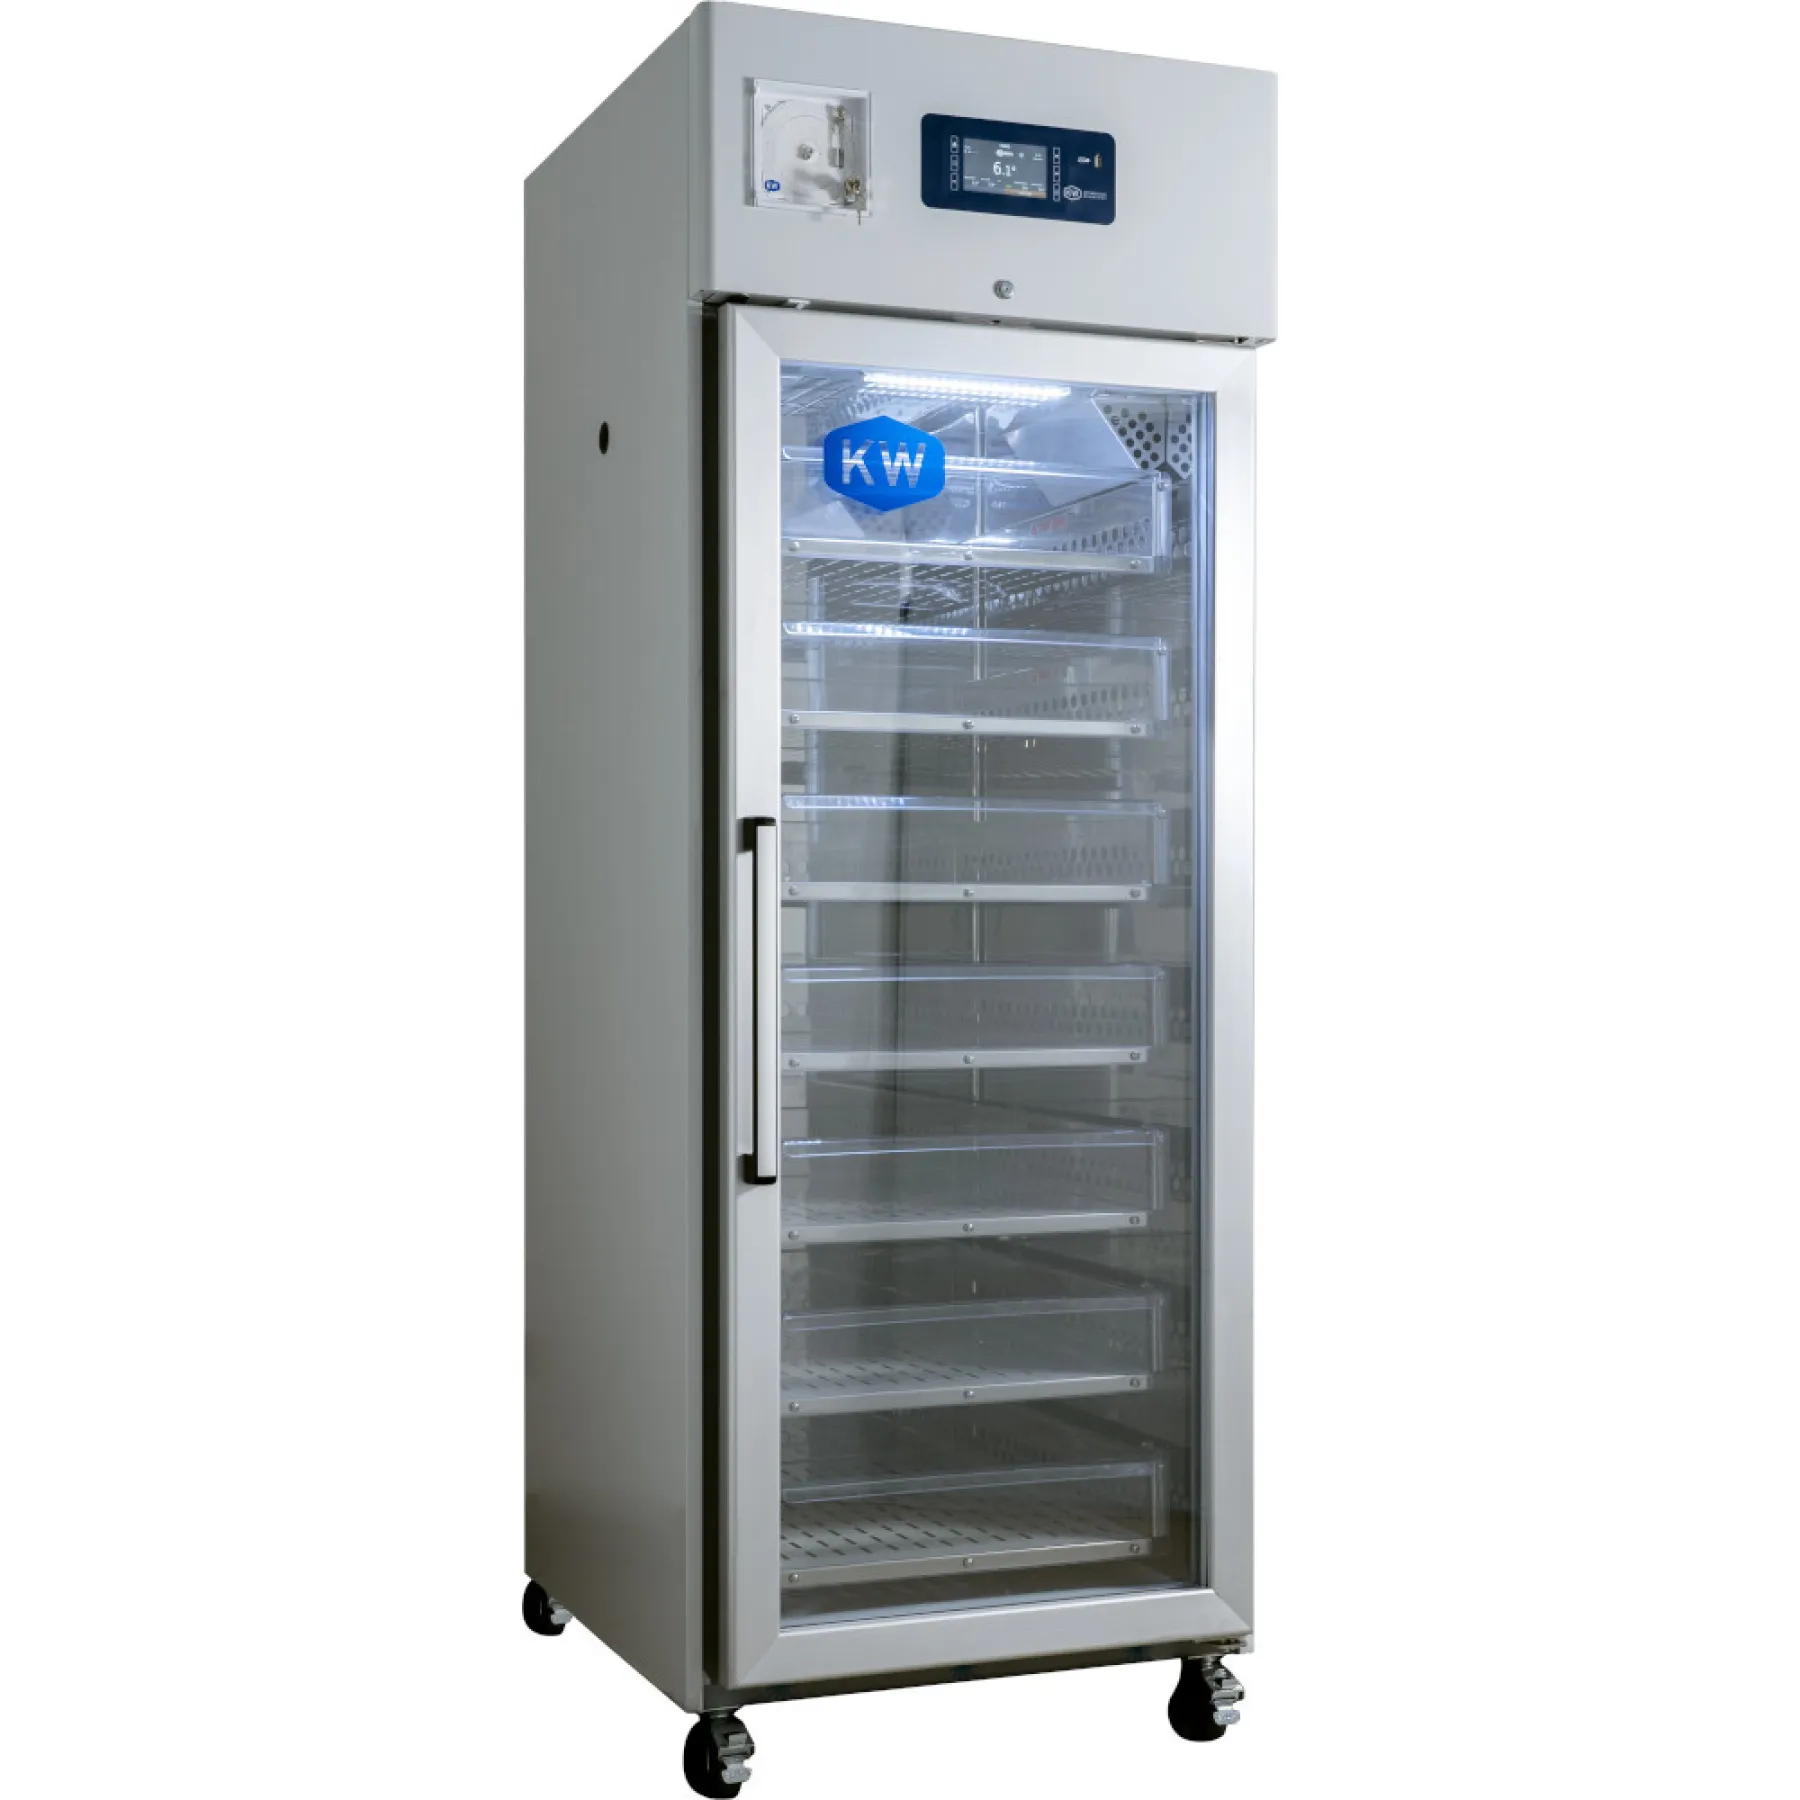 CryoSolutions KW Apparecchi Scientifici HAEMO 700V Kühlschrank +4°C